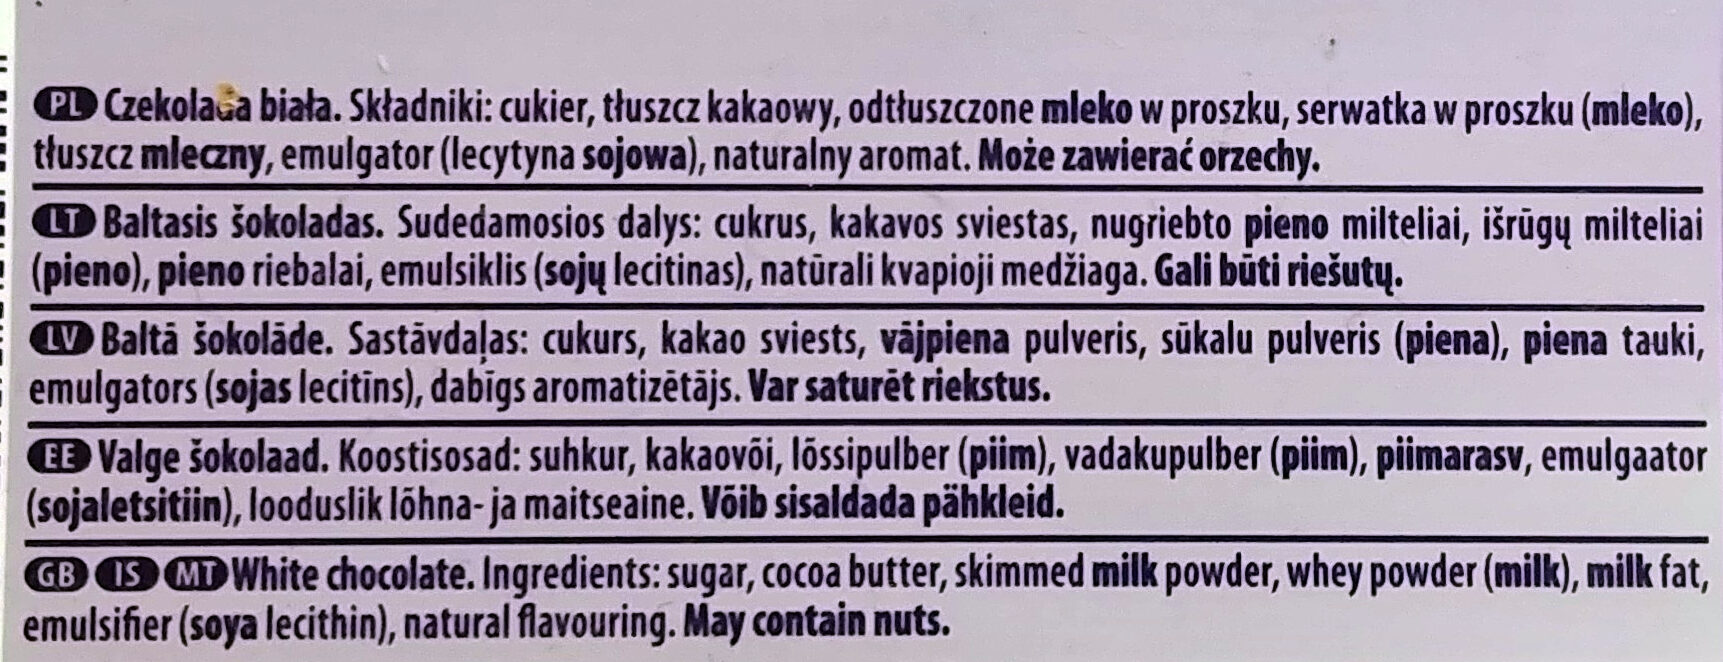 Weiße Schokolade - Składniki - pl